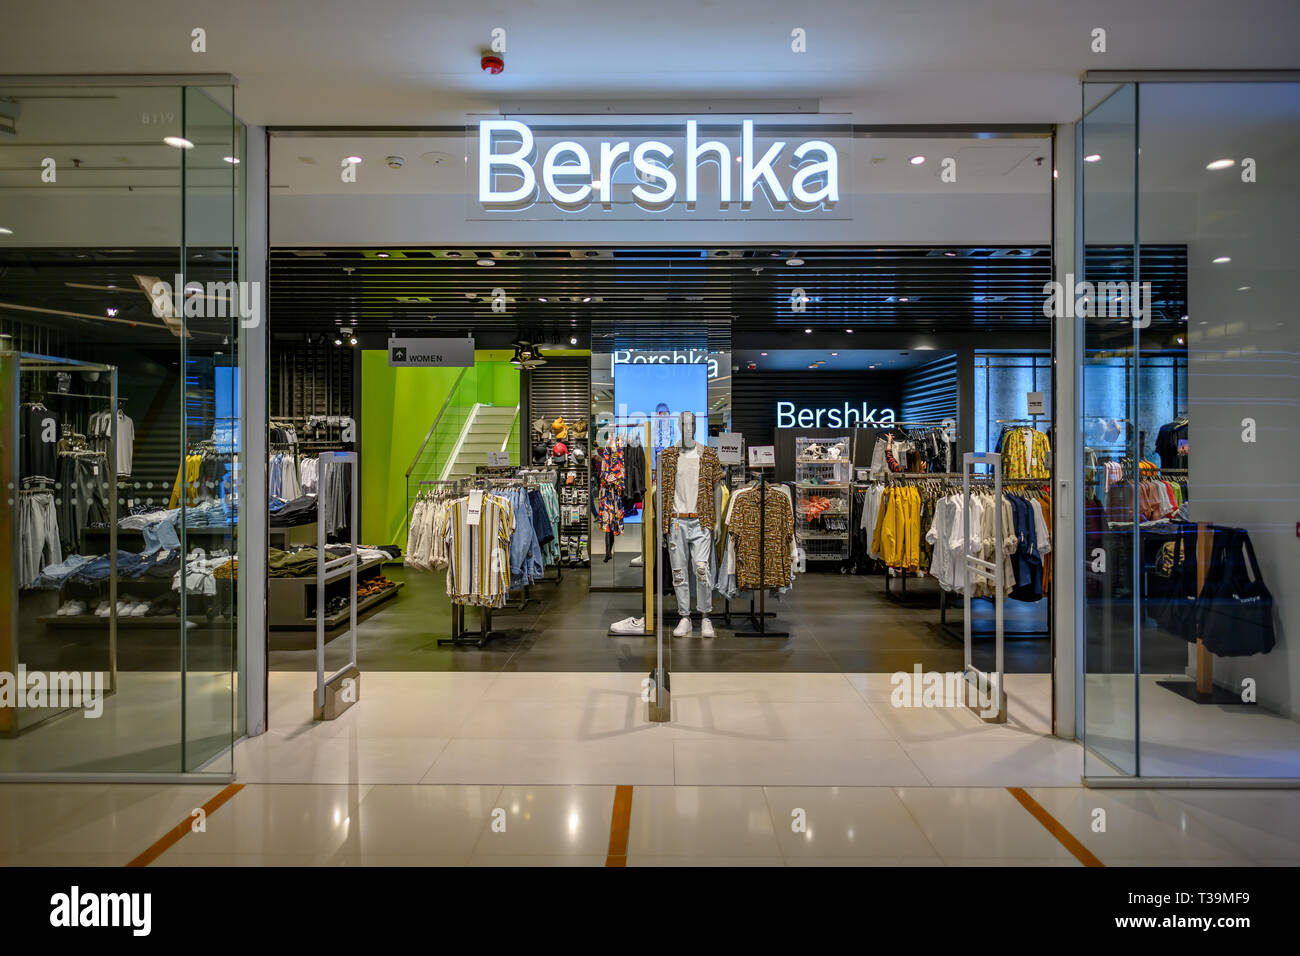 HONG KONG, China - Apr 7, 2019: Bershka store in Hong Kong Stock Photo -  Alamy